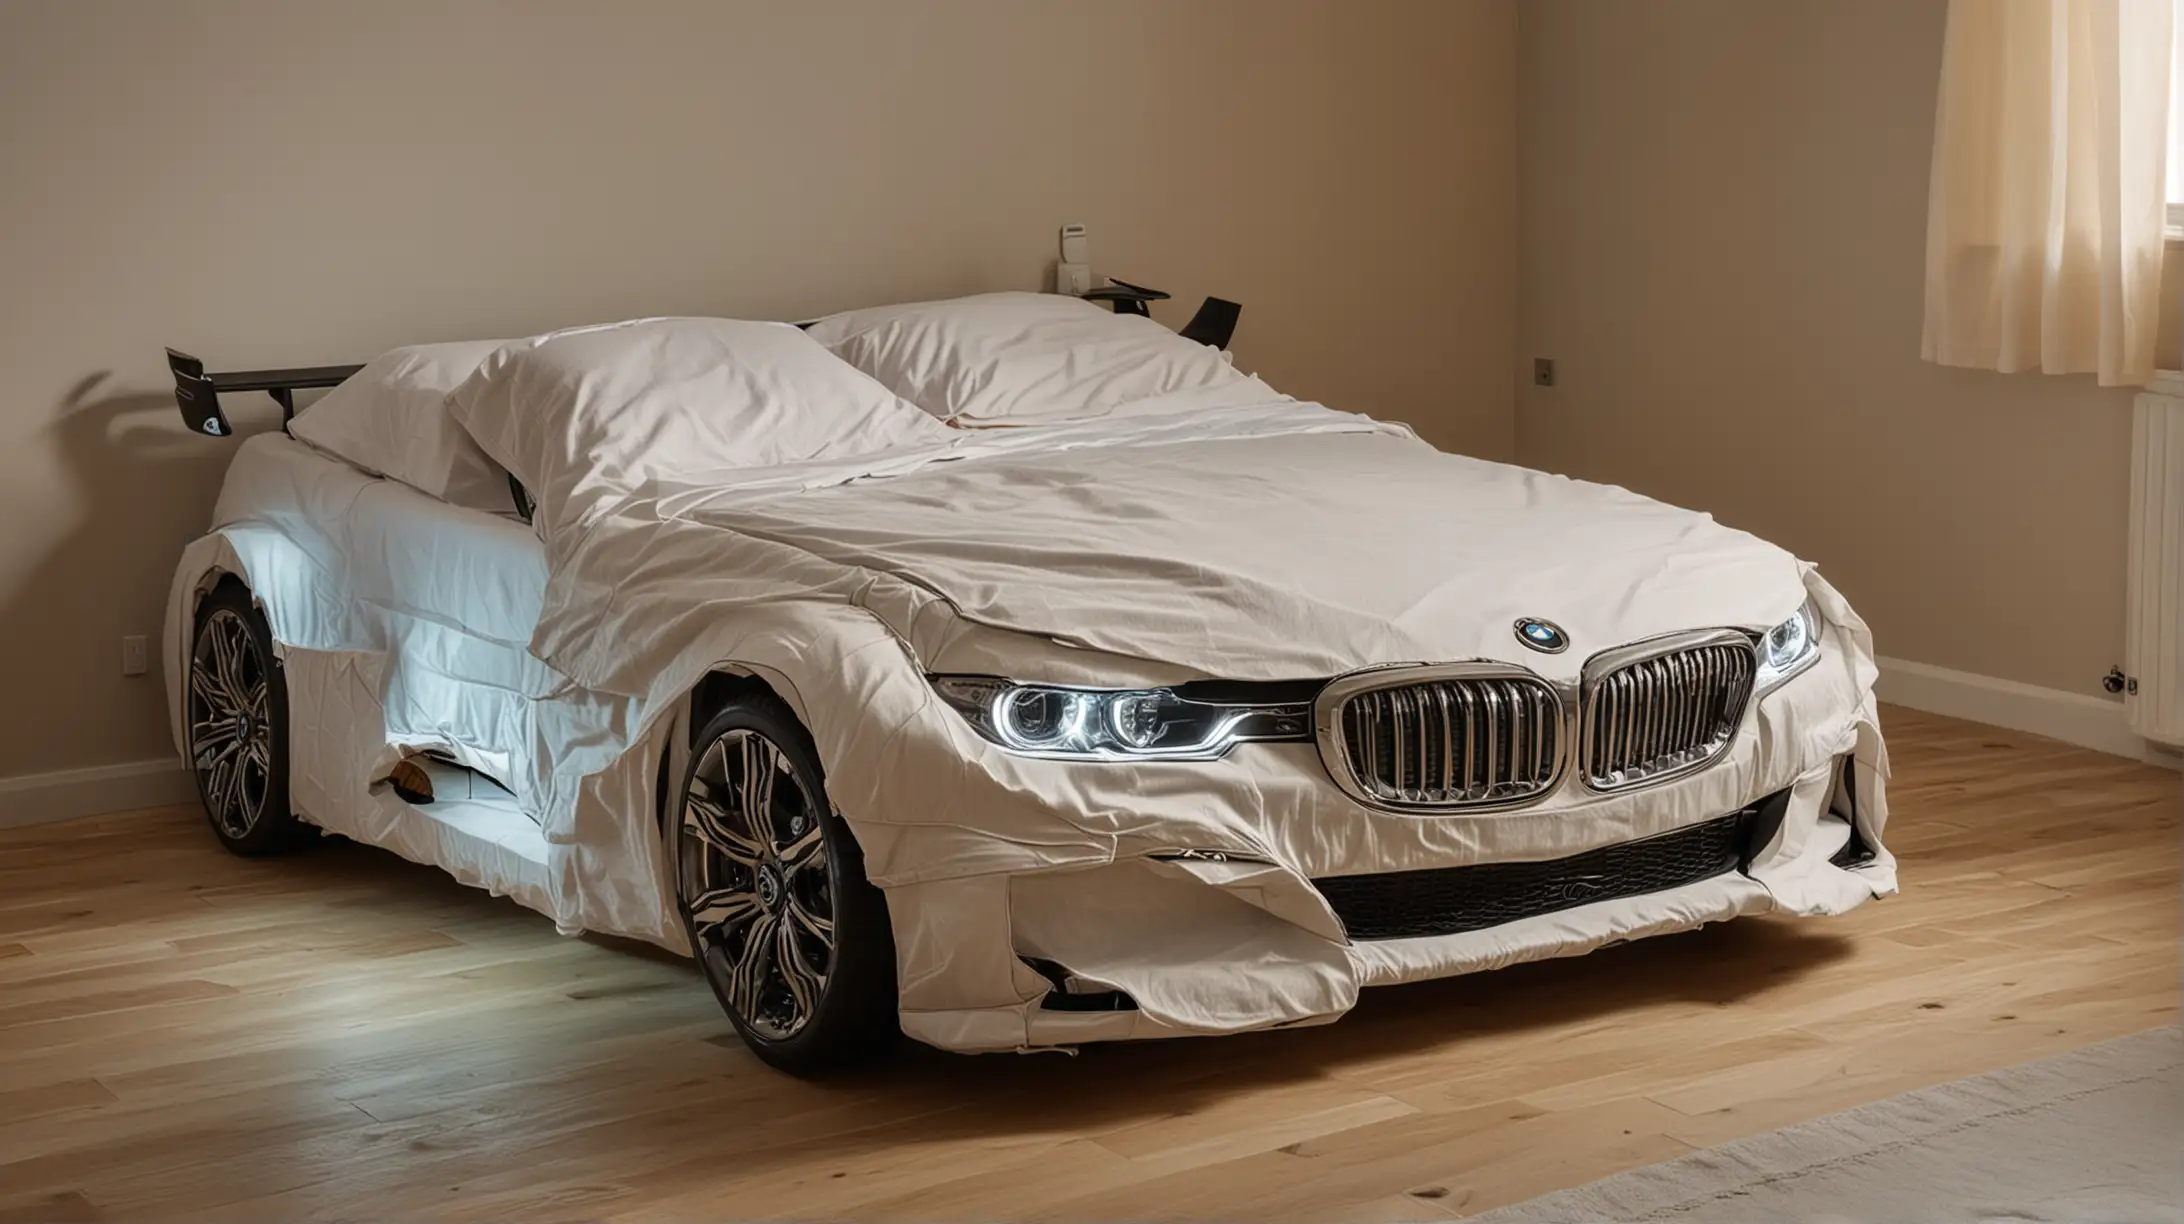 Двухспальная кровать с яркими постельными принадлежностями в форме автомобиля марки БМВ с включенными фарами